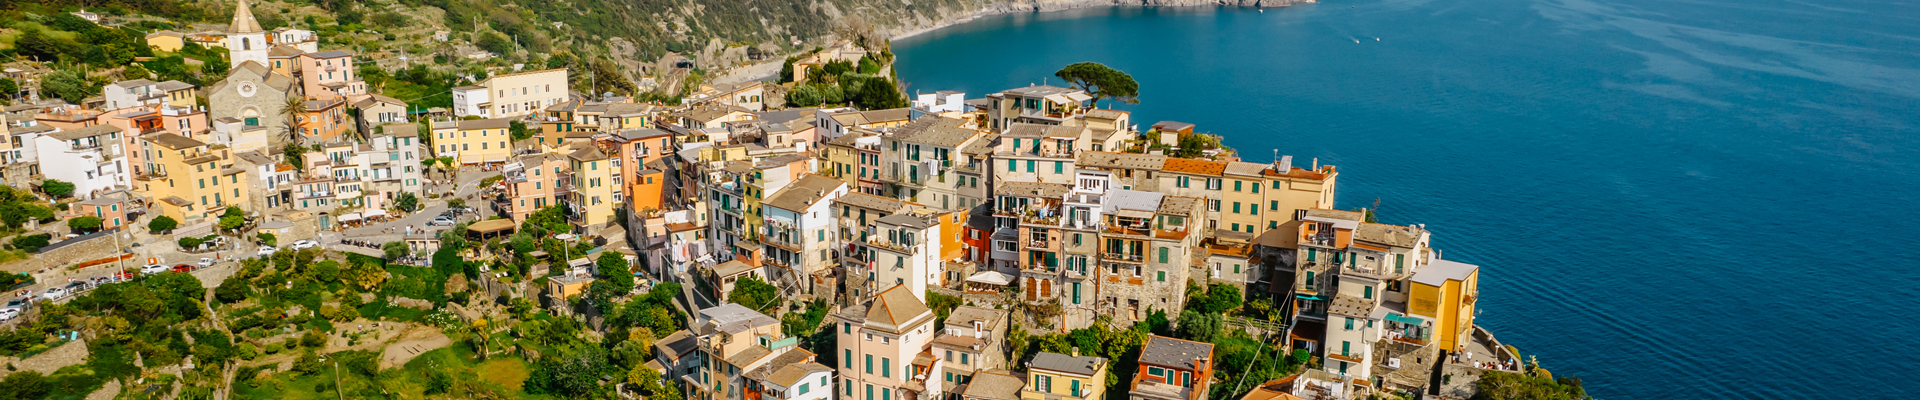 Corniglia, one of the 5 villages in Italy's Cinque Terre